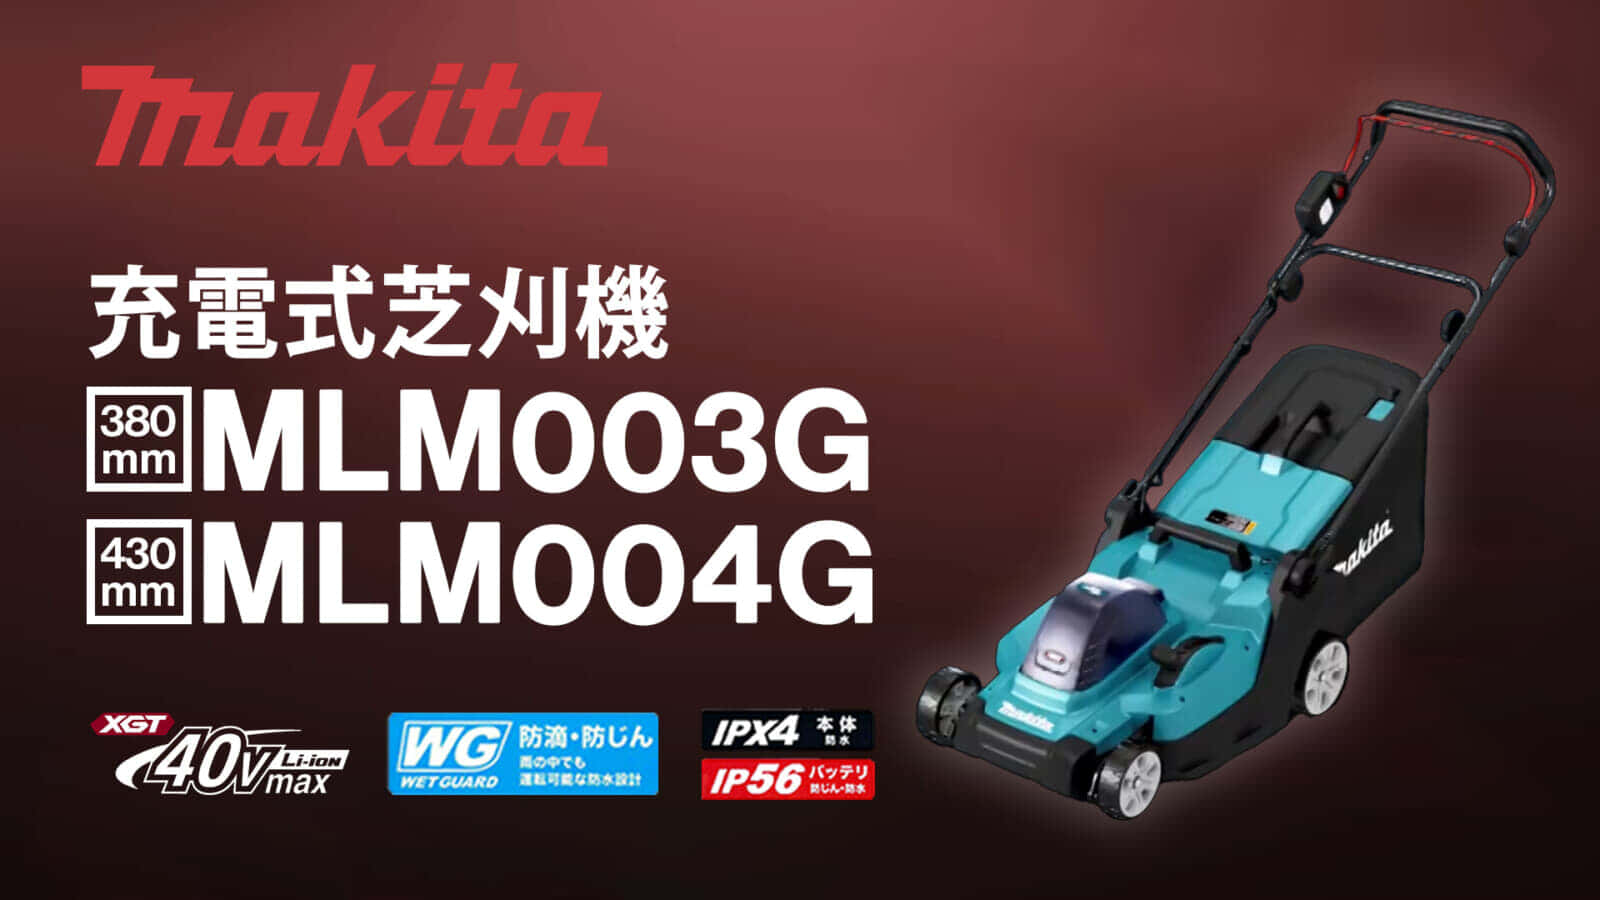 マキタ MLM003G/MLM004G 充電式芝刈機を発売、コンパクト軽量ボディの汎用モデル